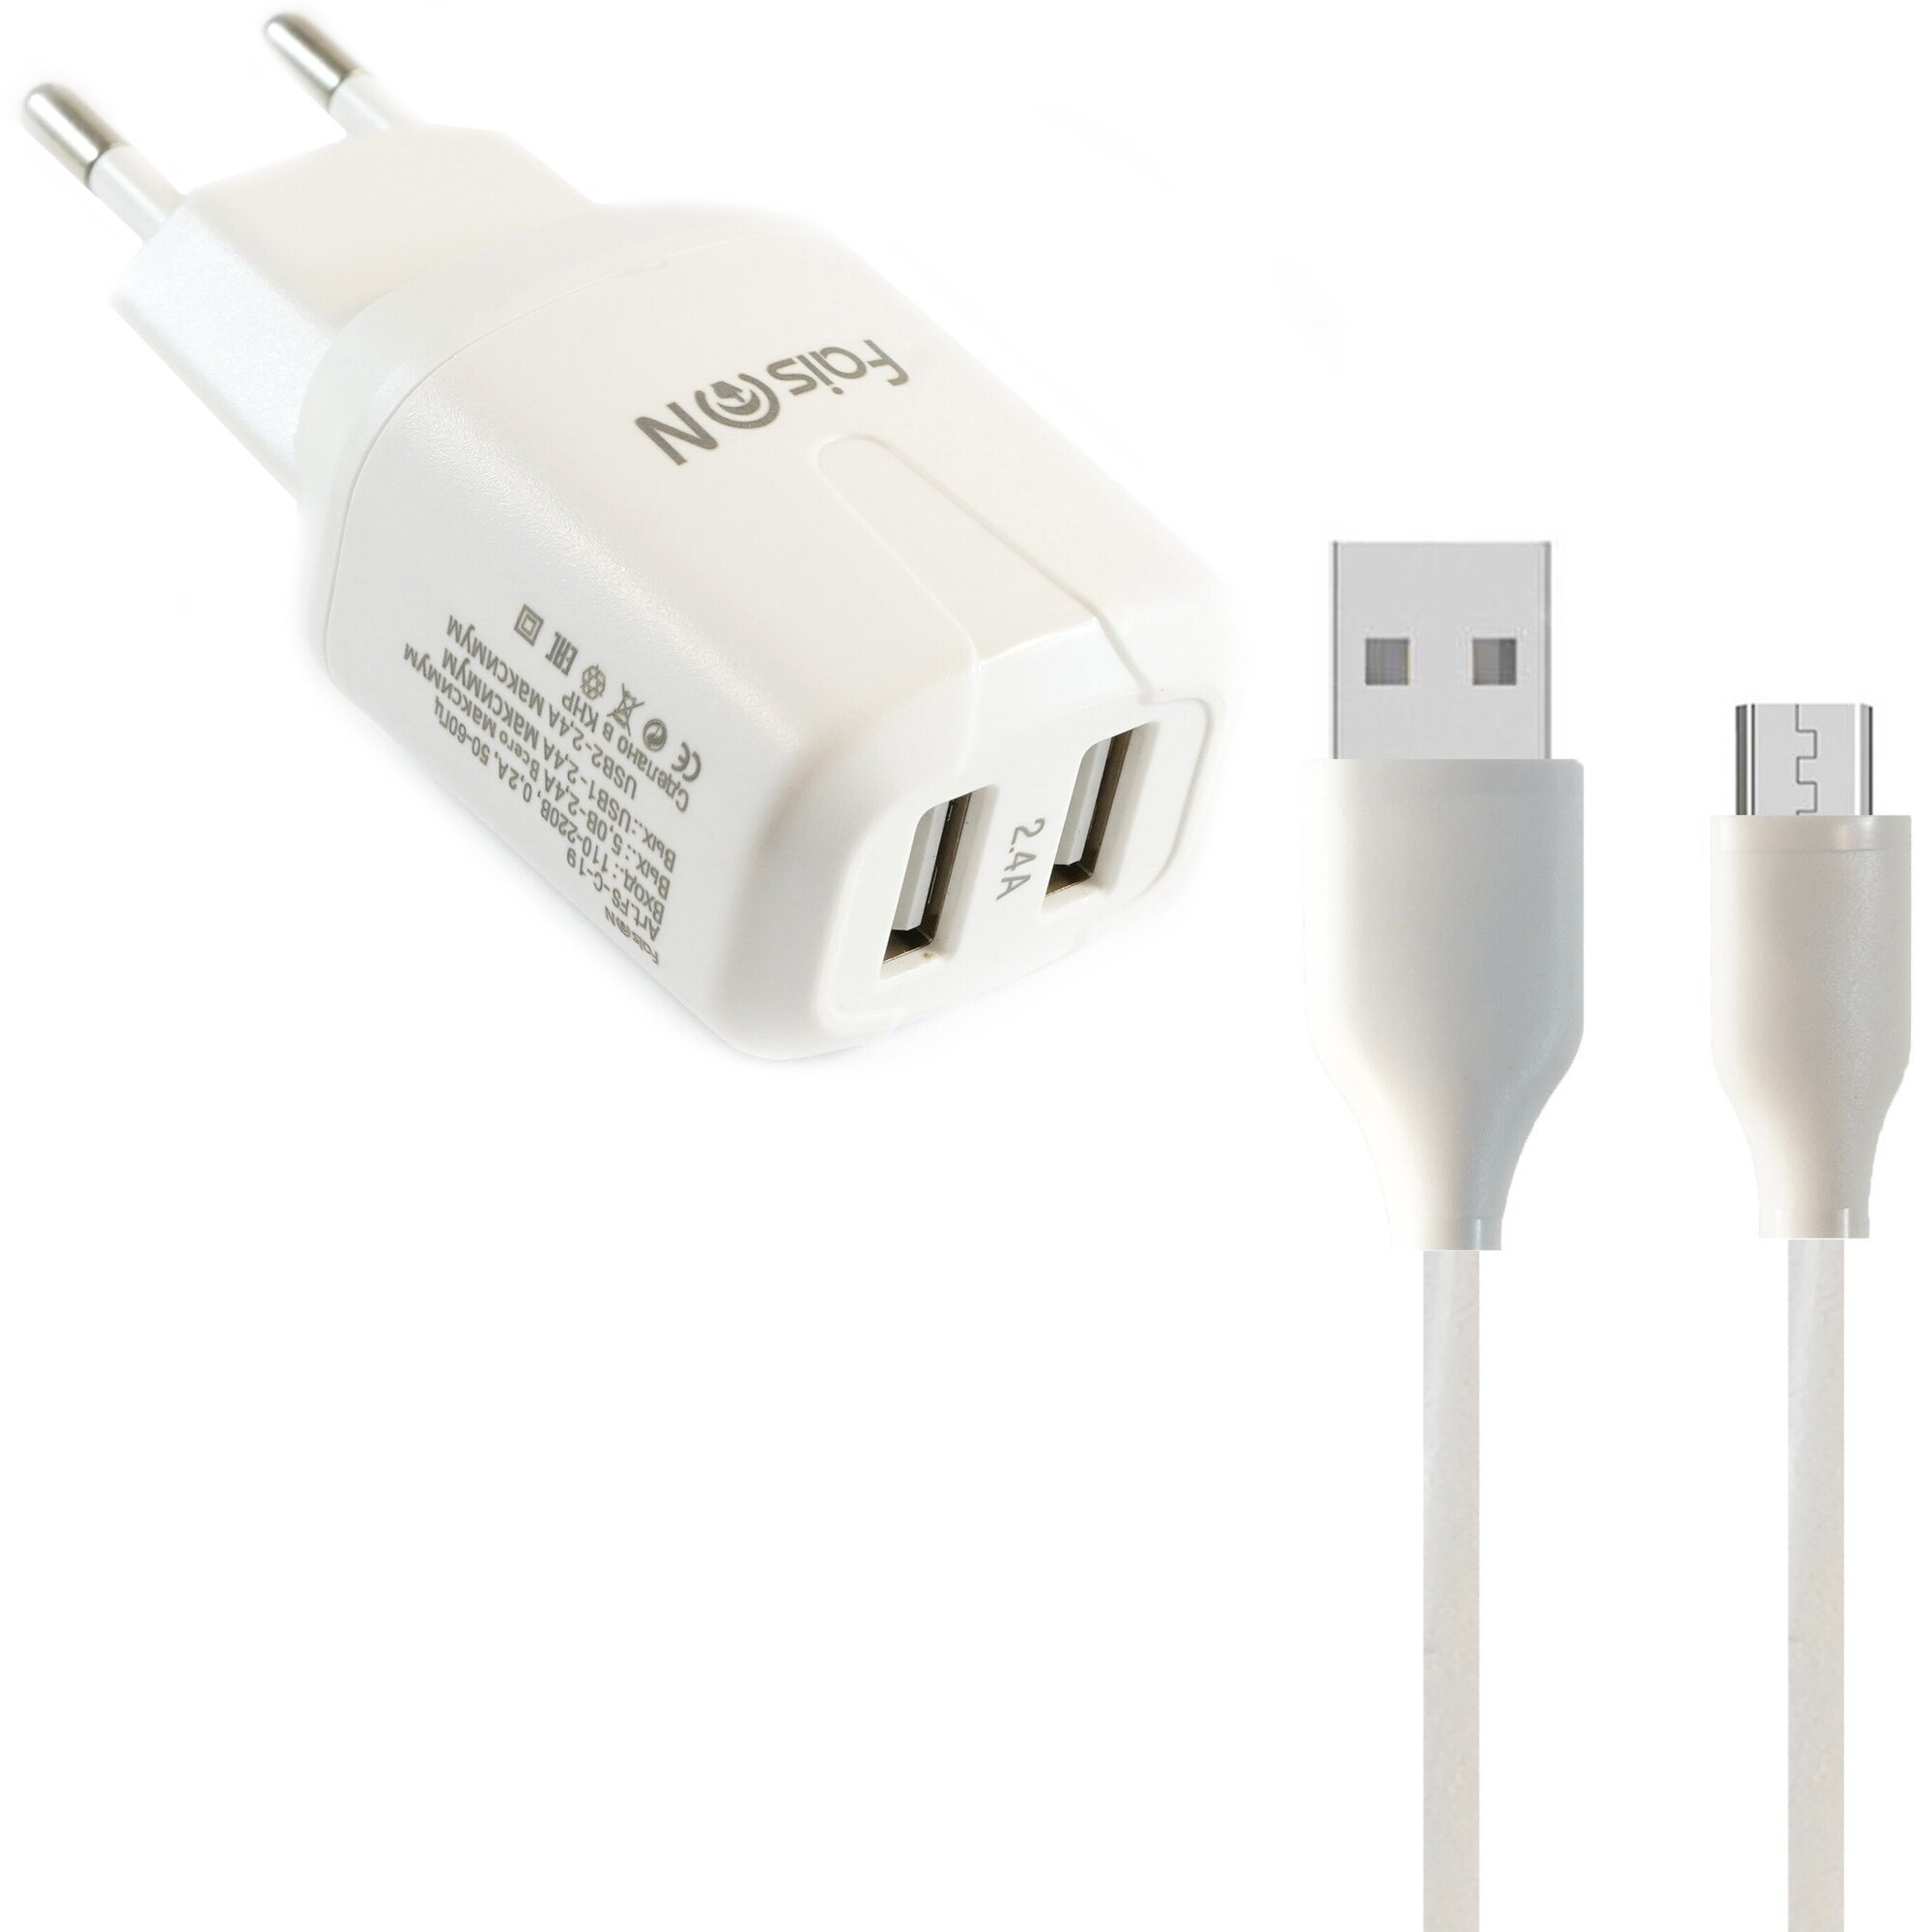 Сетевая зарядка FaisON 2xUSB C-19 Grade 2.4A кабель микро USB 1.0м белый